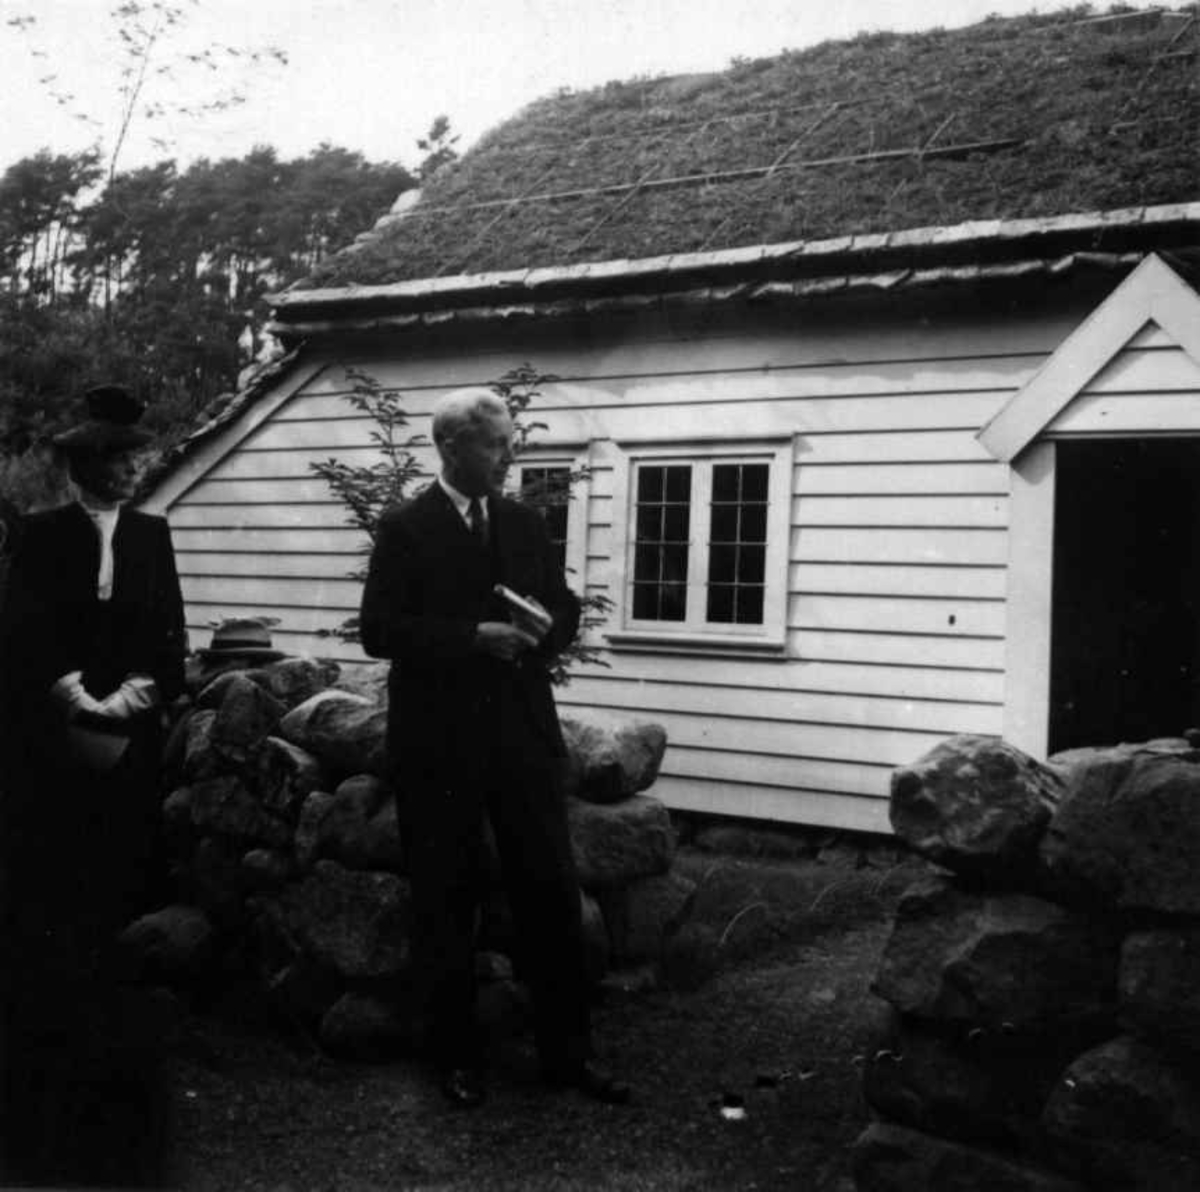 Foran Lendestua  på Norsk Folkemuseum, bygning nr. 91 på åpningsdagen den 30. august 1939.
Professor Sem Sæland taler ved innvielsen.
Stua kommer fra Lende, Time på Jæren.